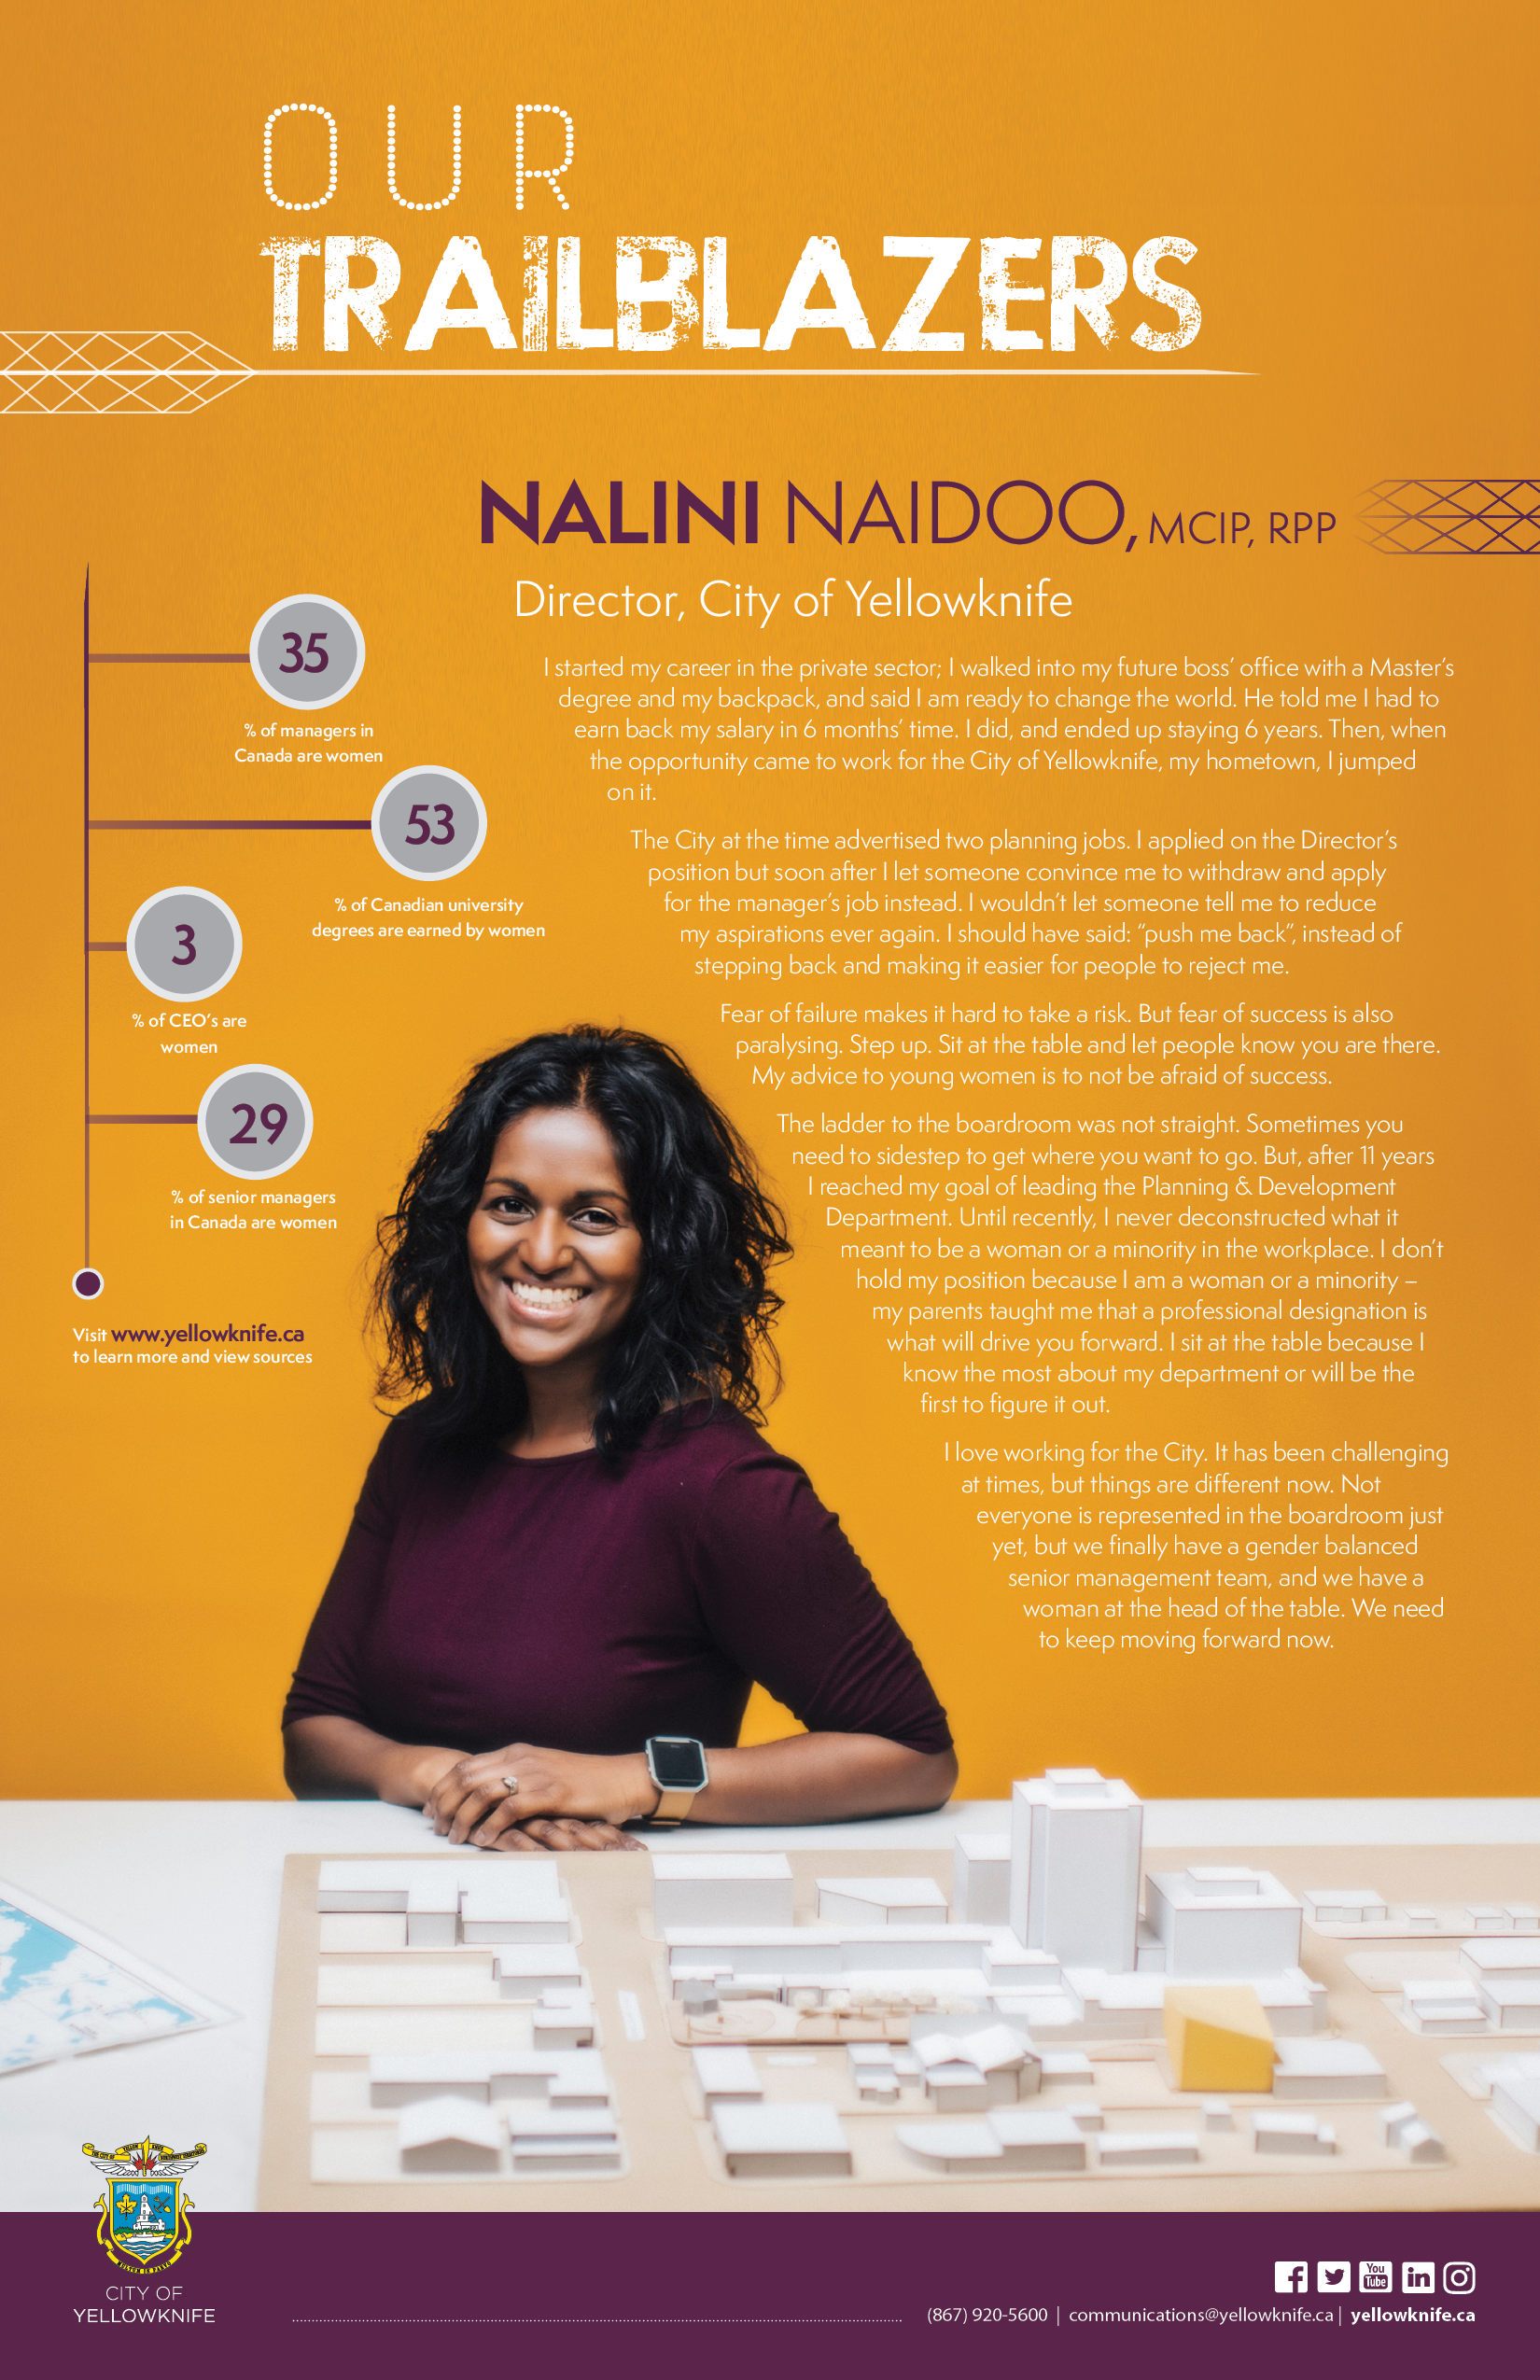 Trailblazer Graphic - Nalini Naidoo (caption below)